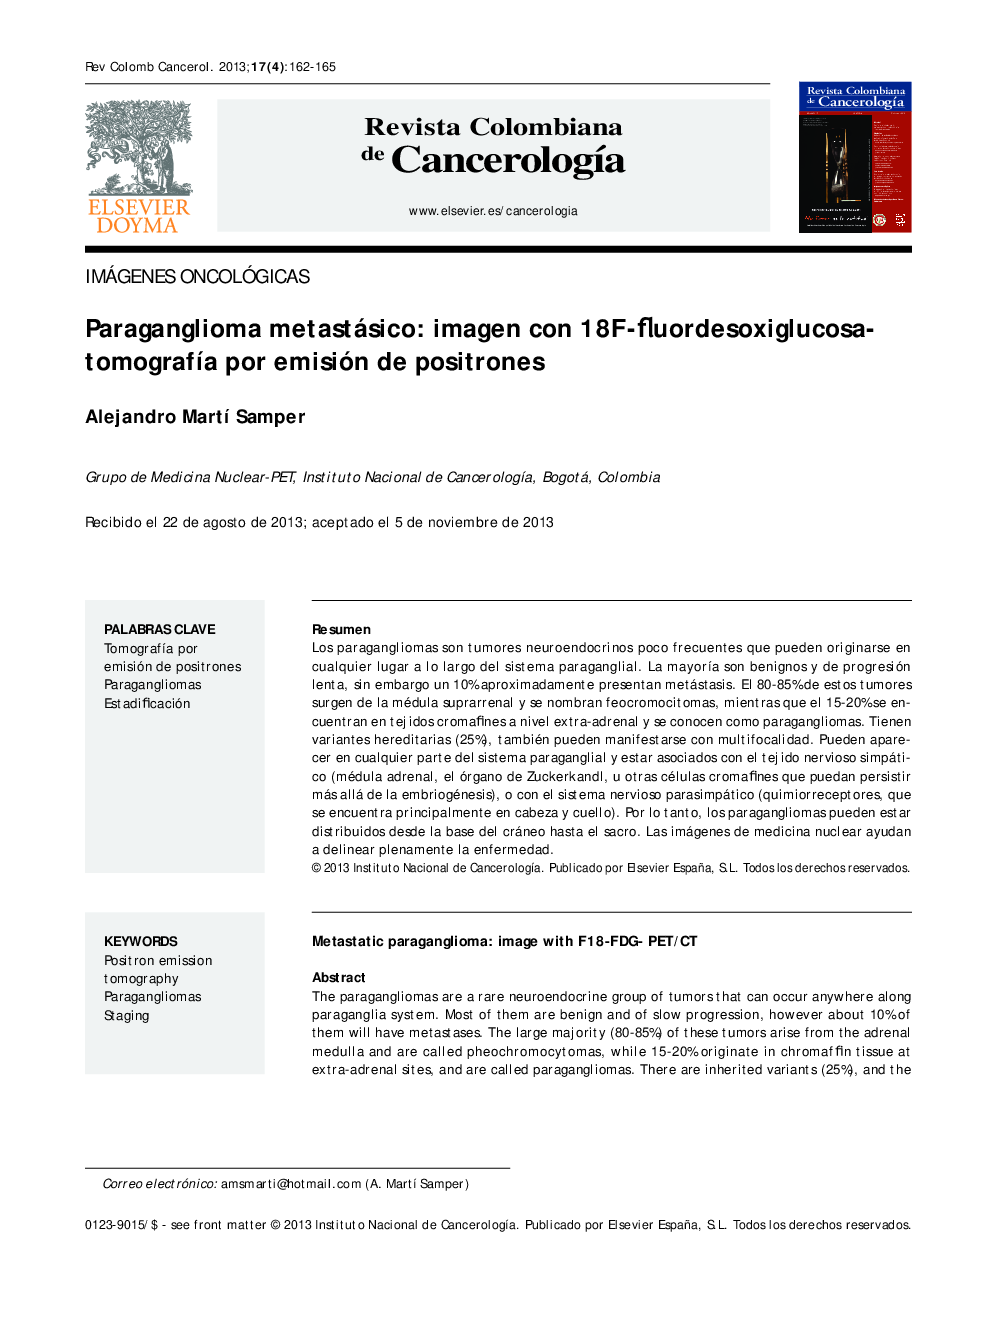 Paraganglioma metastásico: imagen con 18F-fluordesoxiglucosatomografÃ­a por emisión de positrones